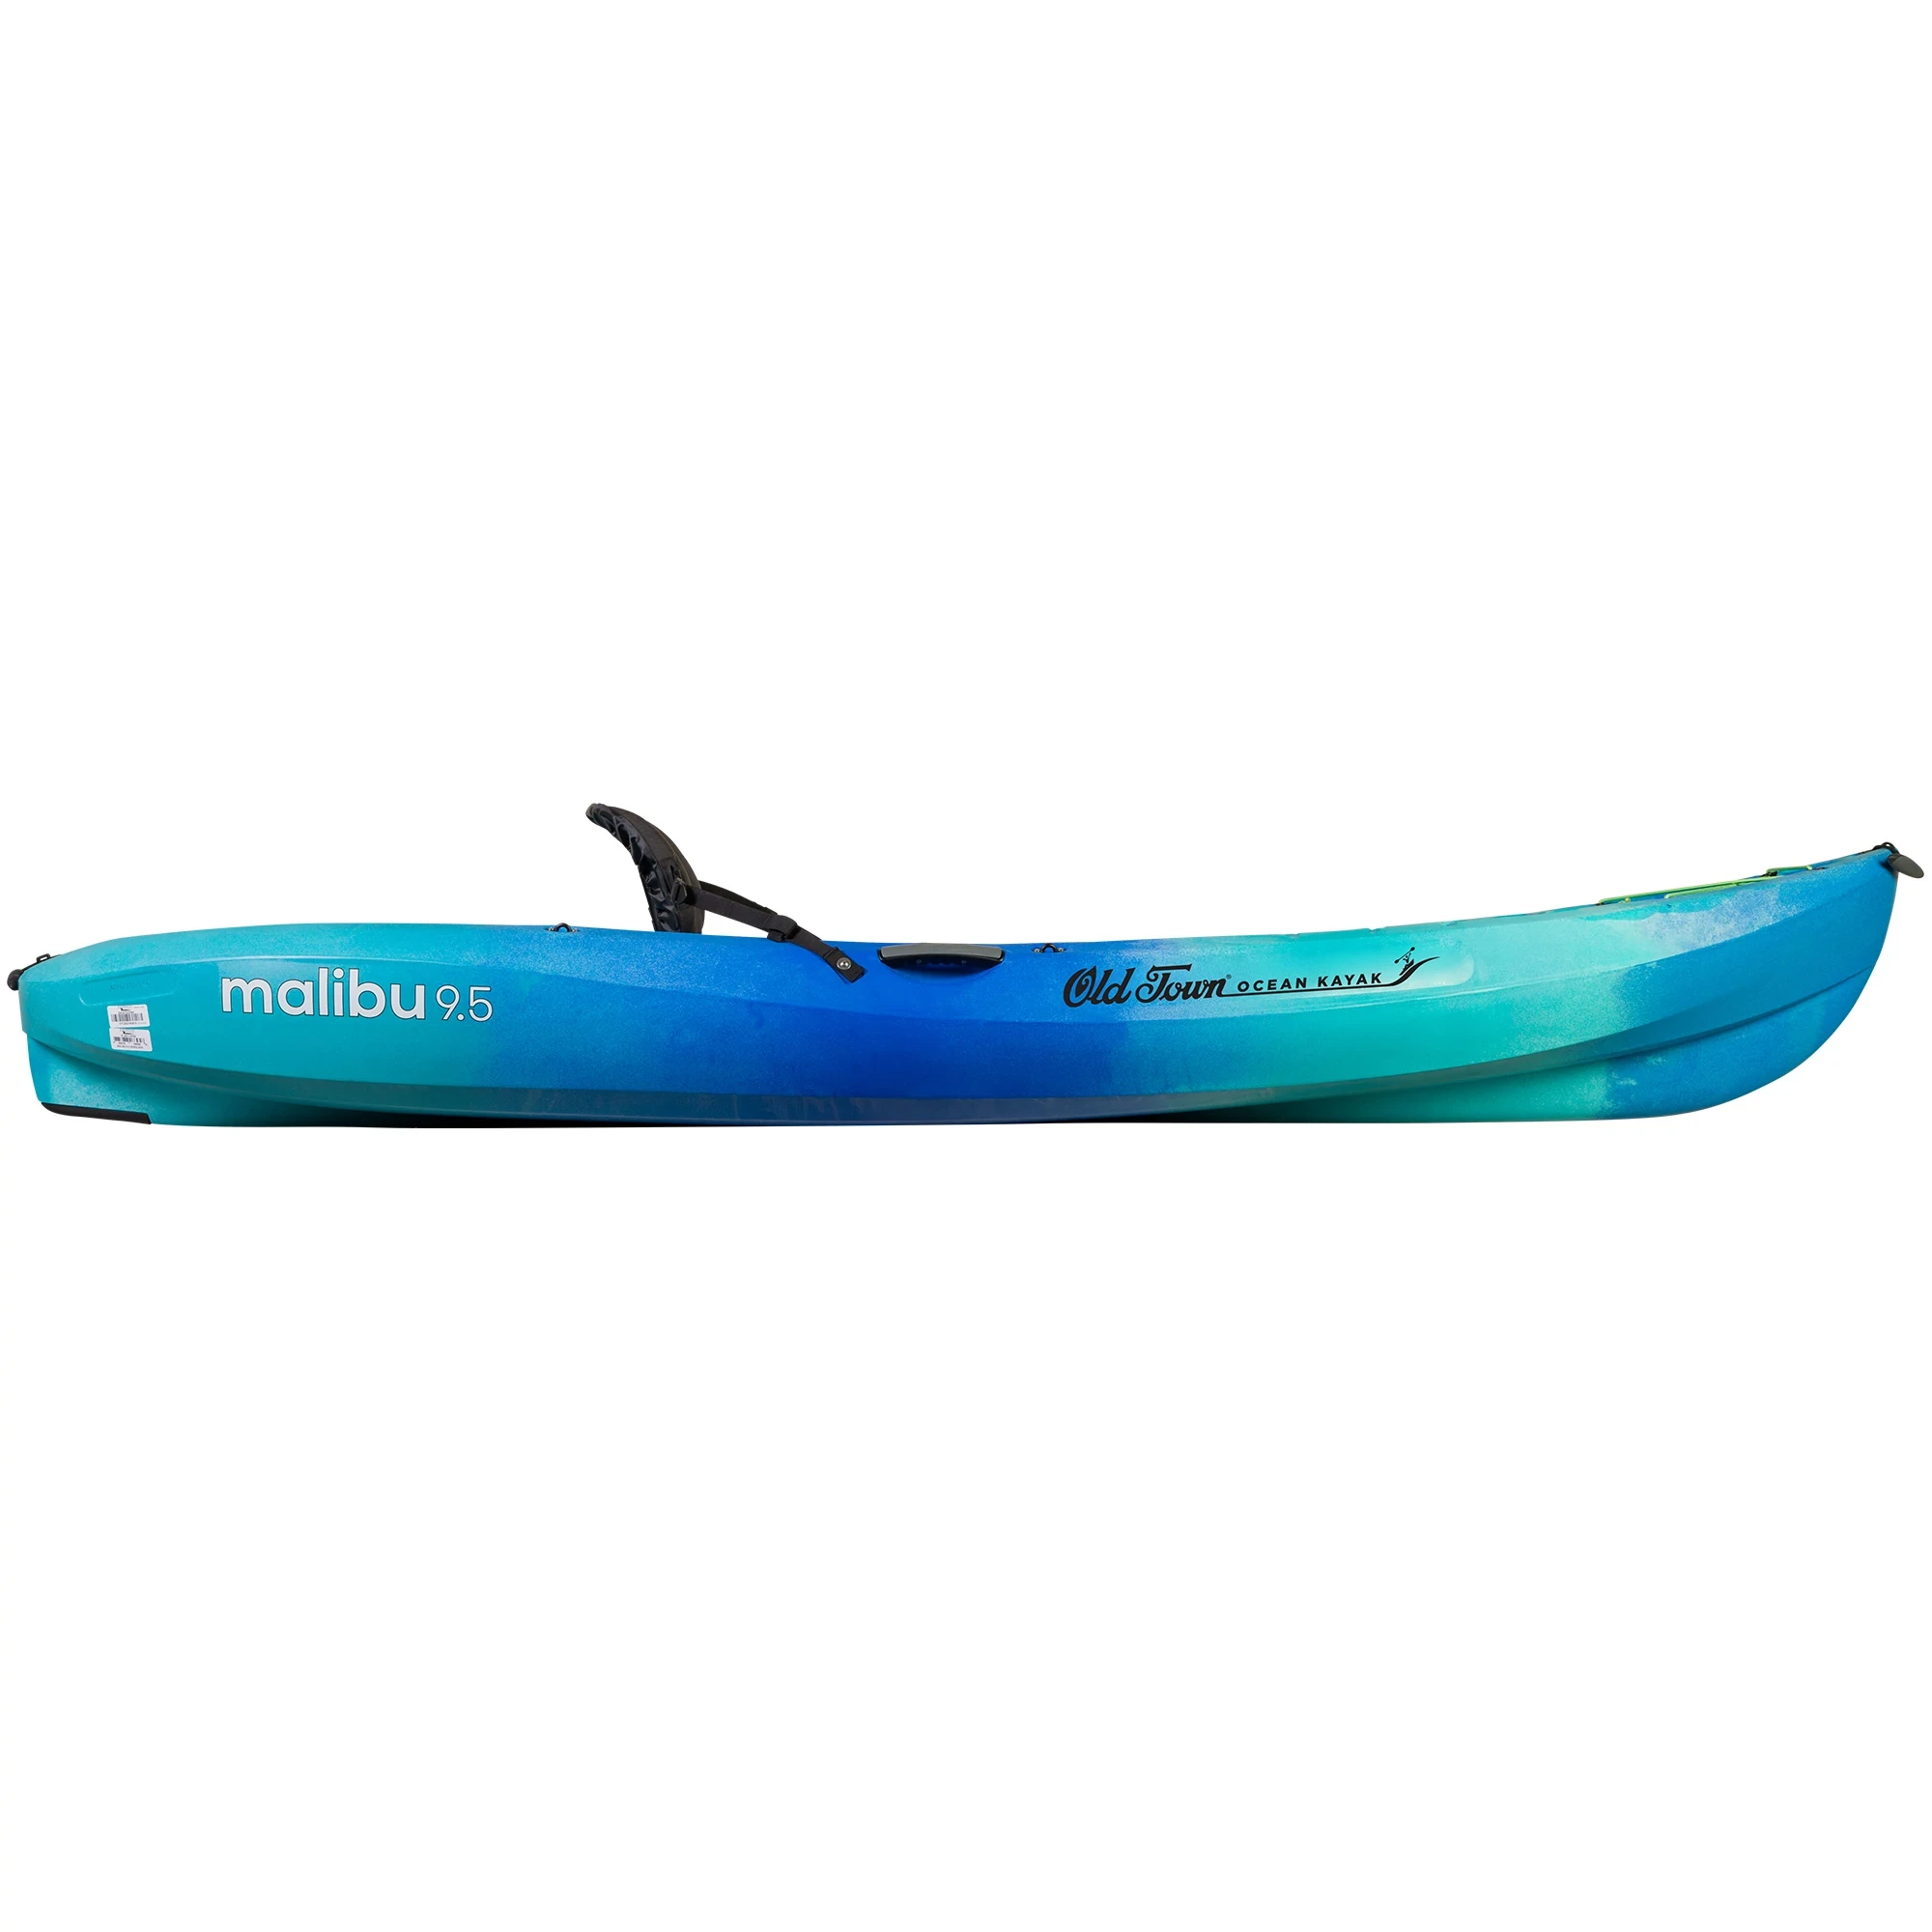 Ocean Kayak Malibu 9.5 - Seaglass - Side View